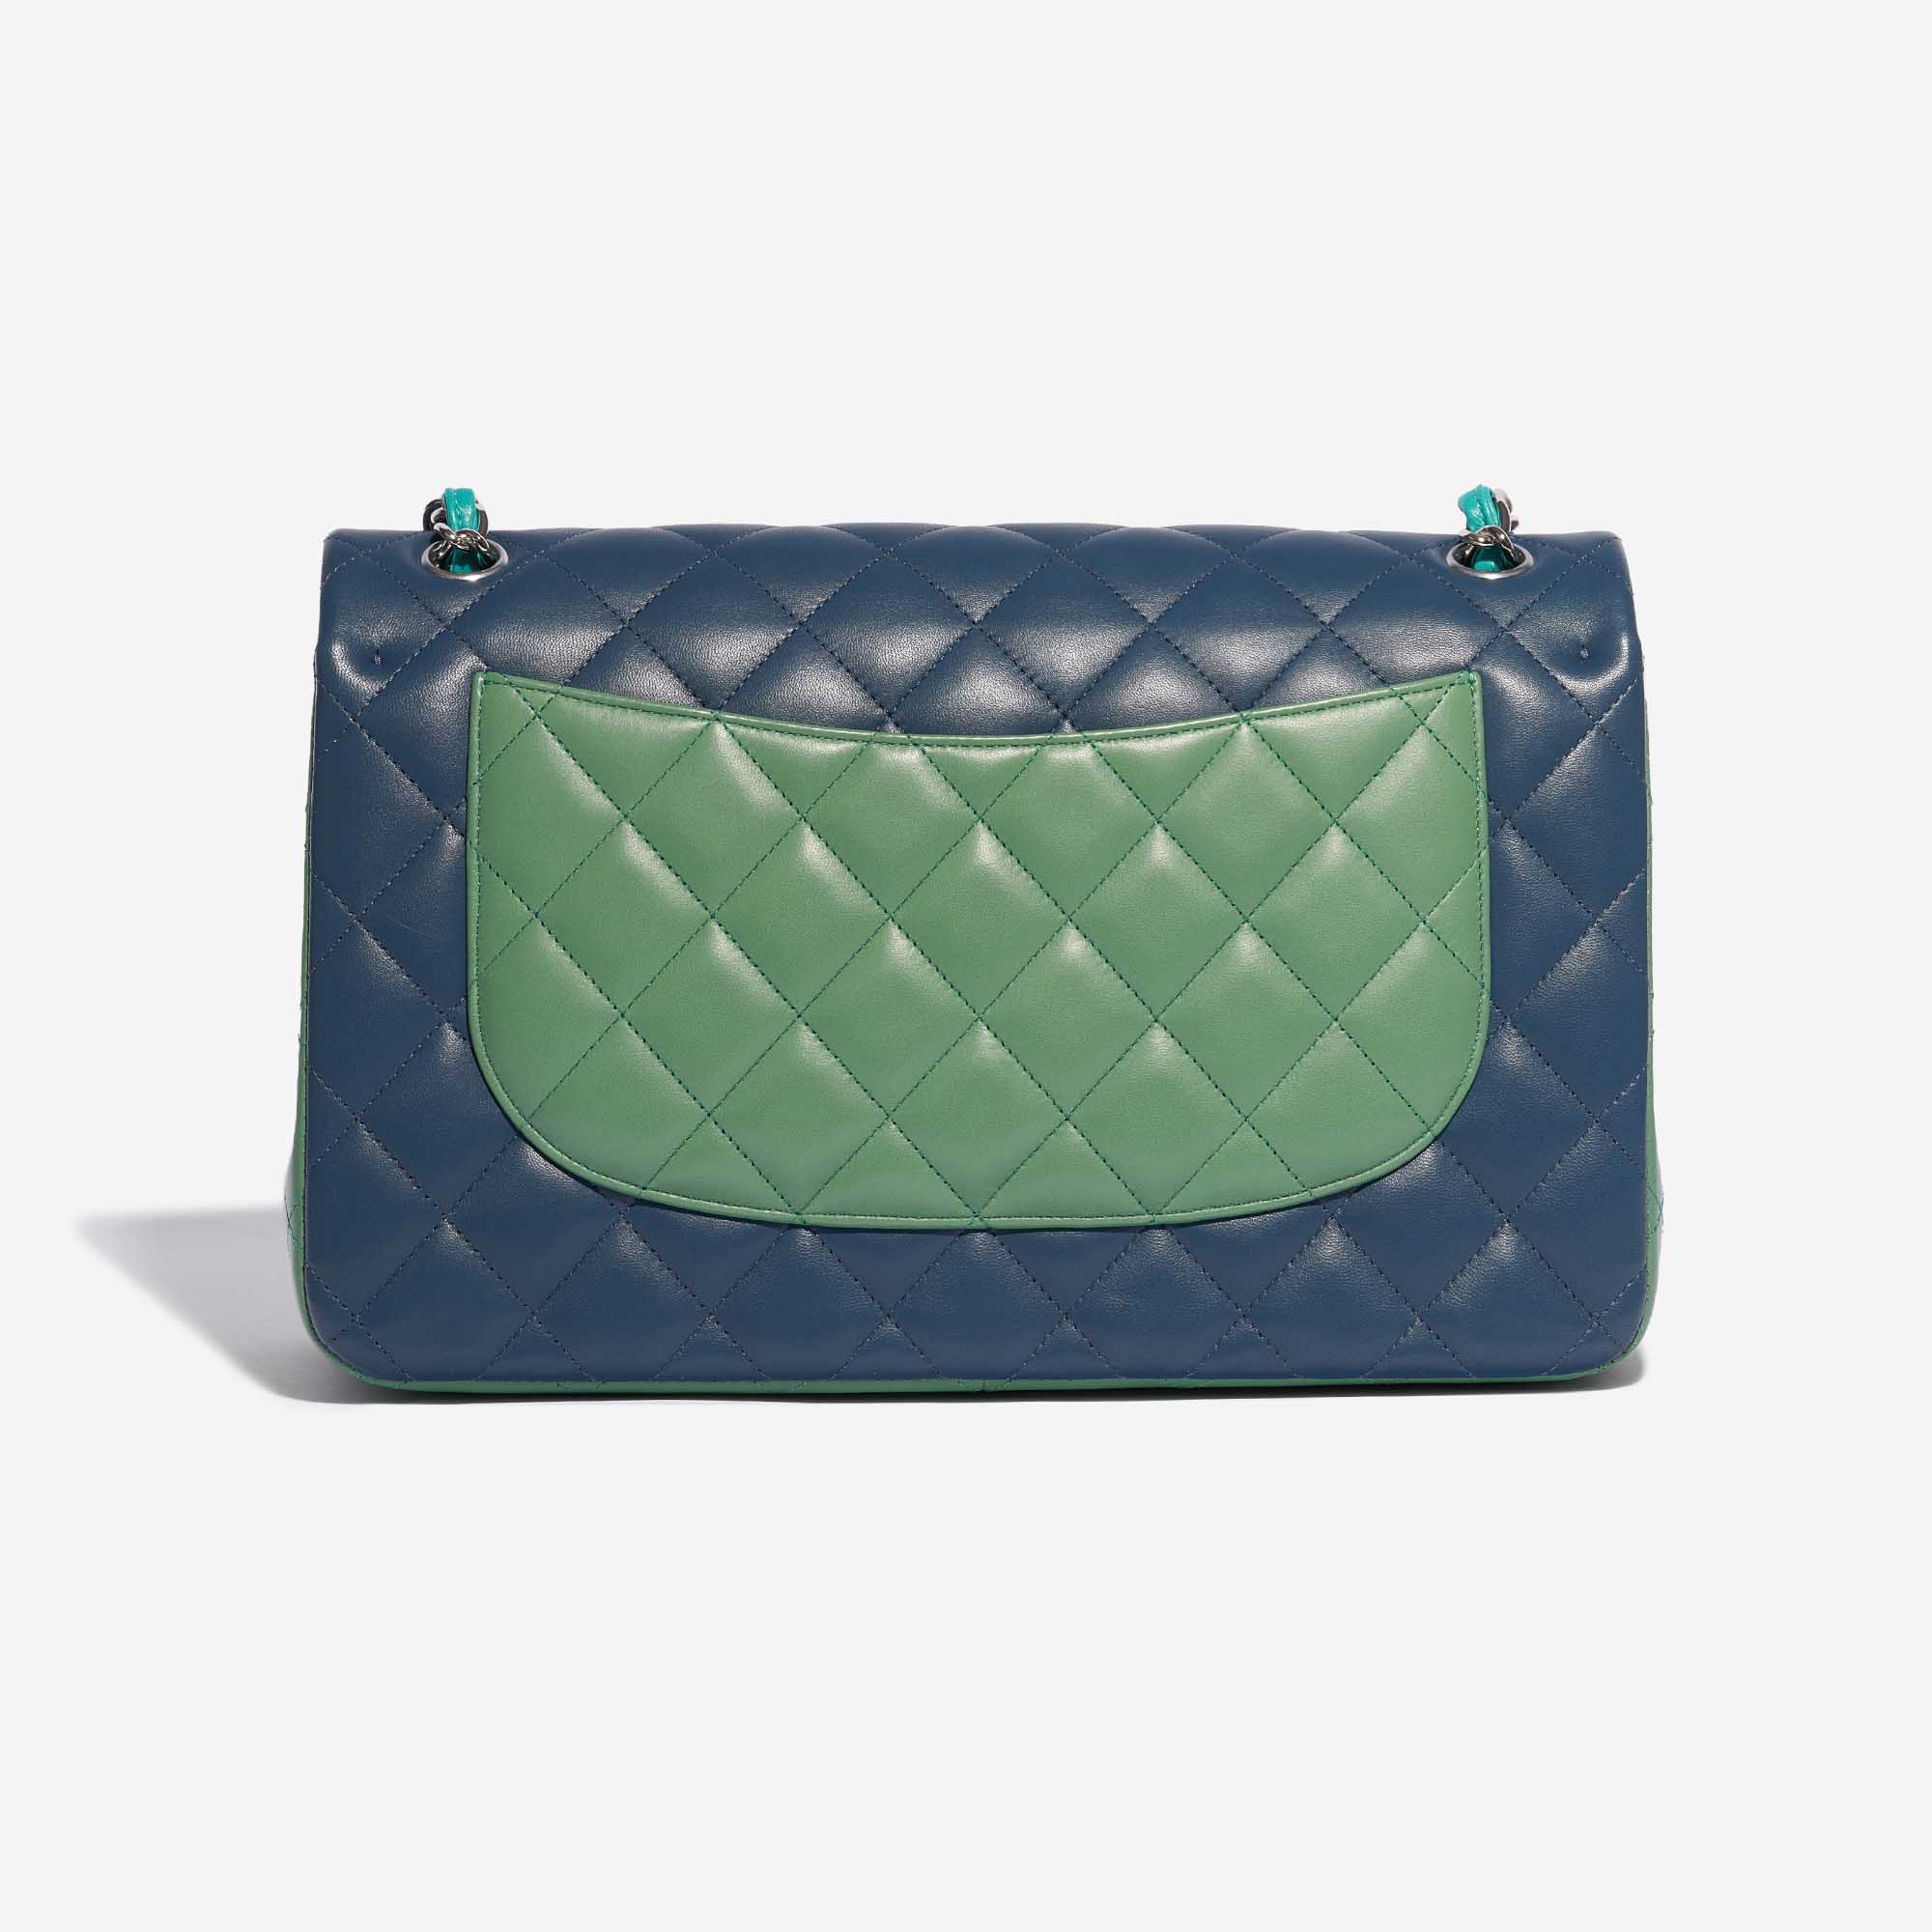 Sac Chanel d'occasion Timeless Agneau Jumbo Vert / Turquoise / Bleu Bleu, Multicolore Dos | Vendez votre sac de créateur sur Saclab.com